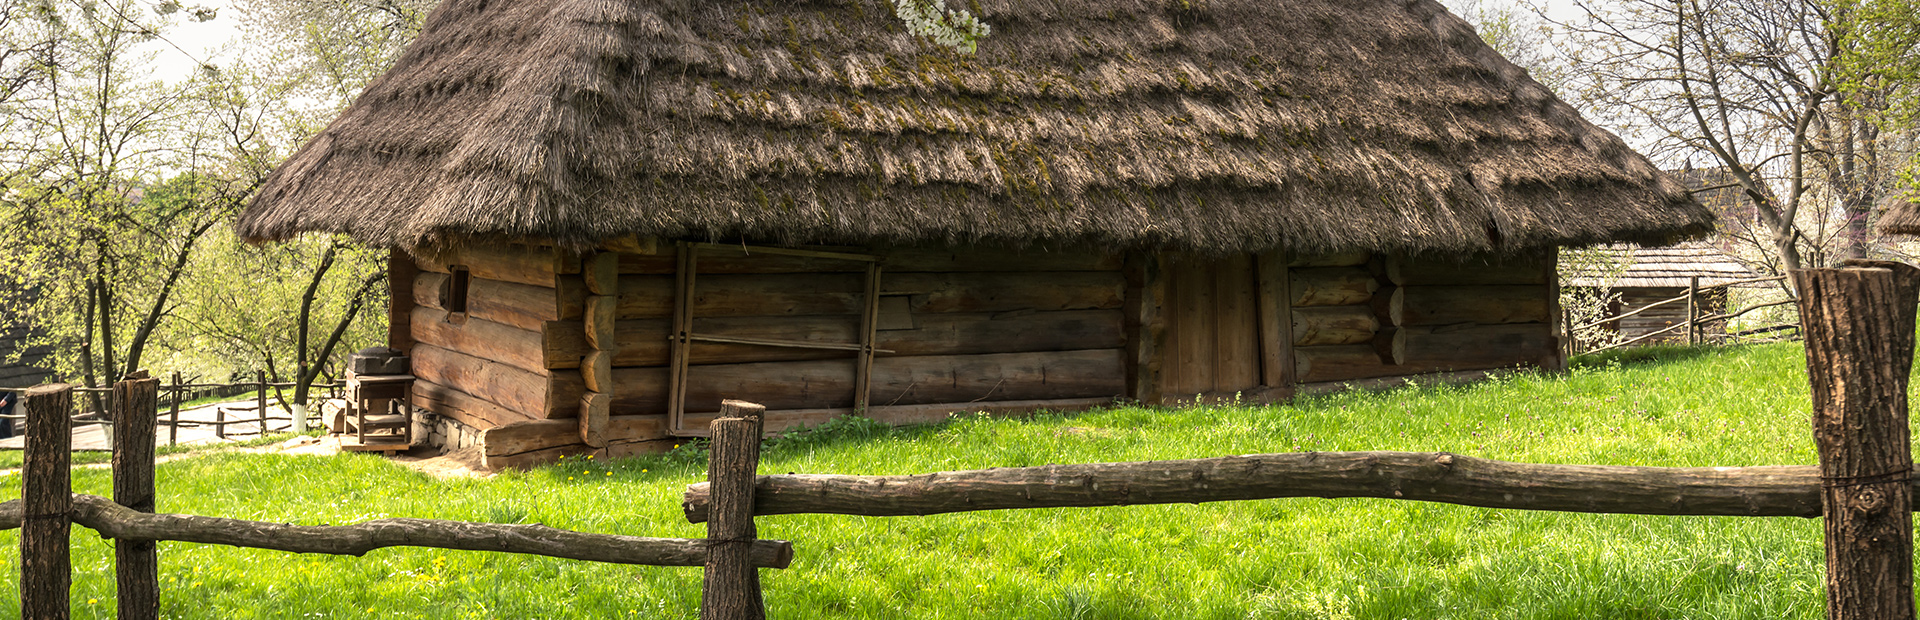 Stara drewniana chata mazurska pokryta słomą a wokół domu rosnąca zielona trawa.  